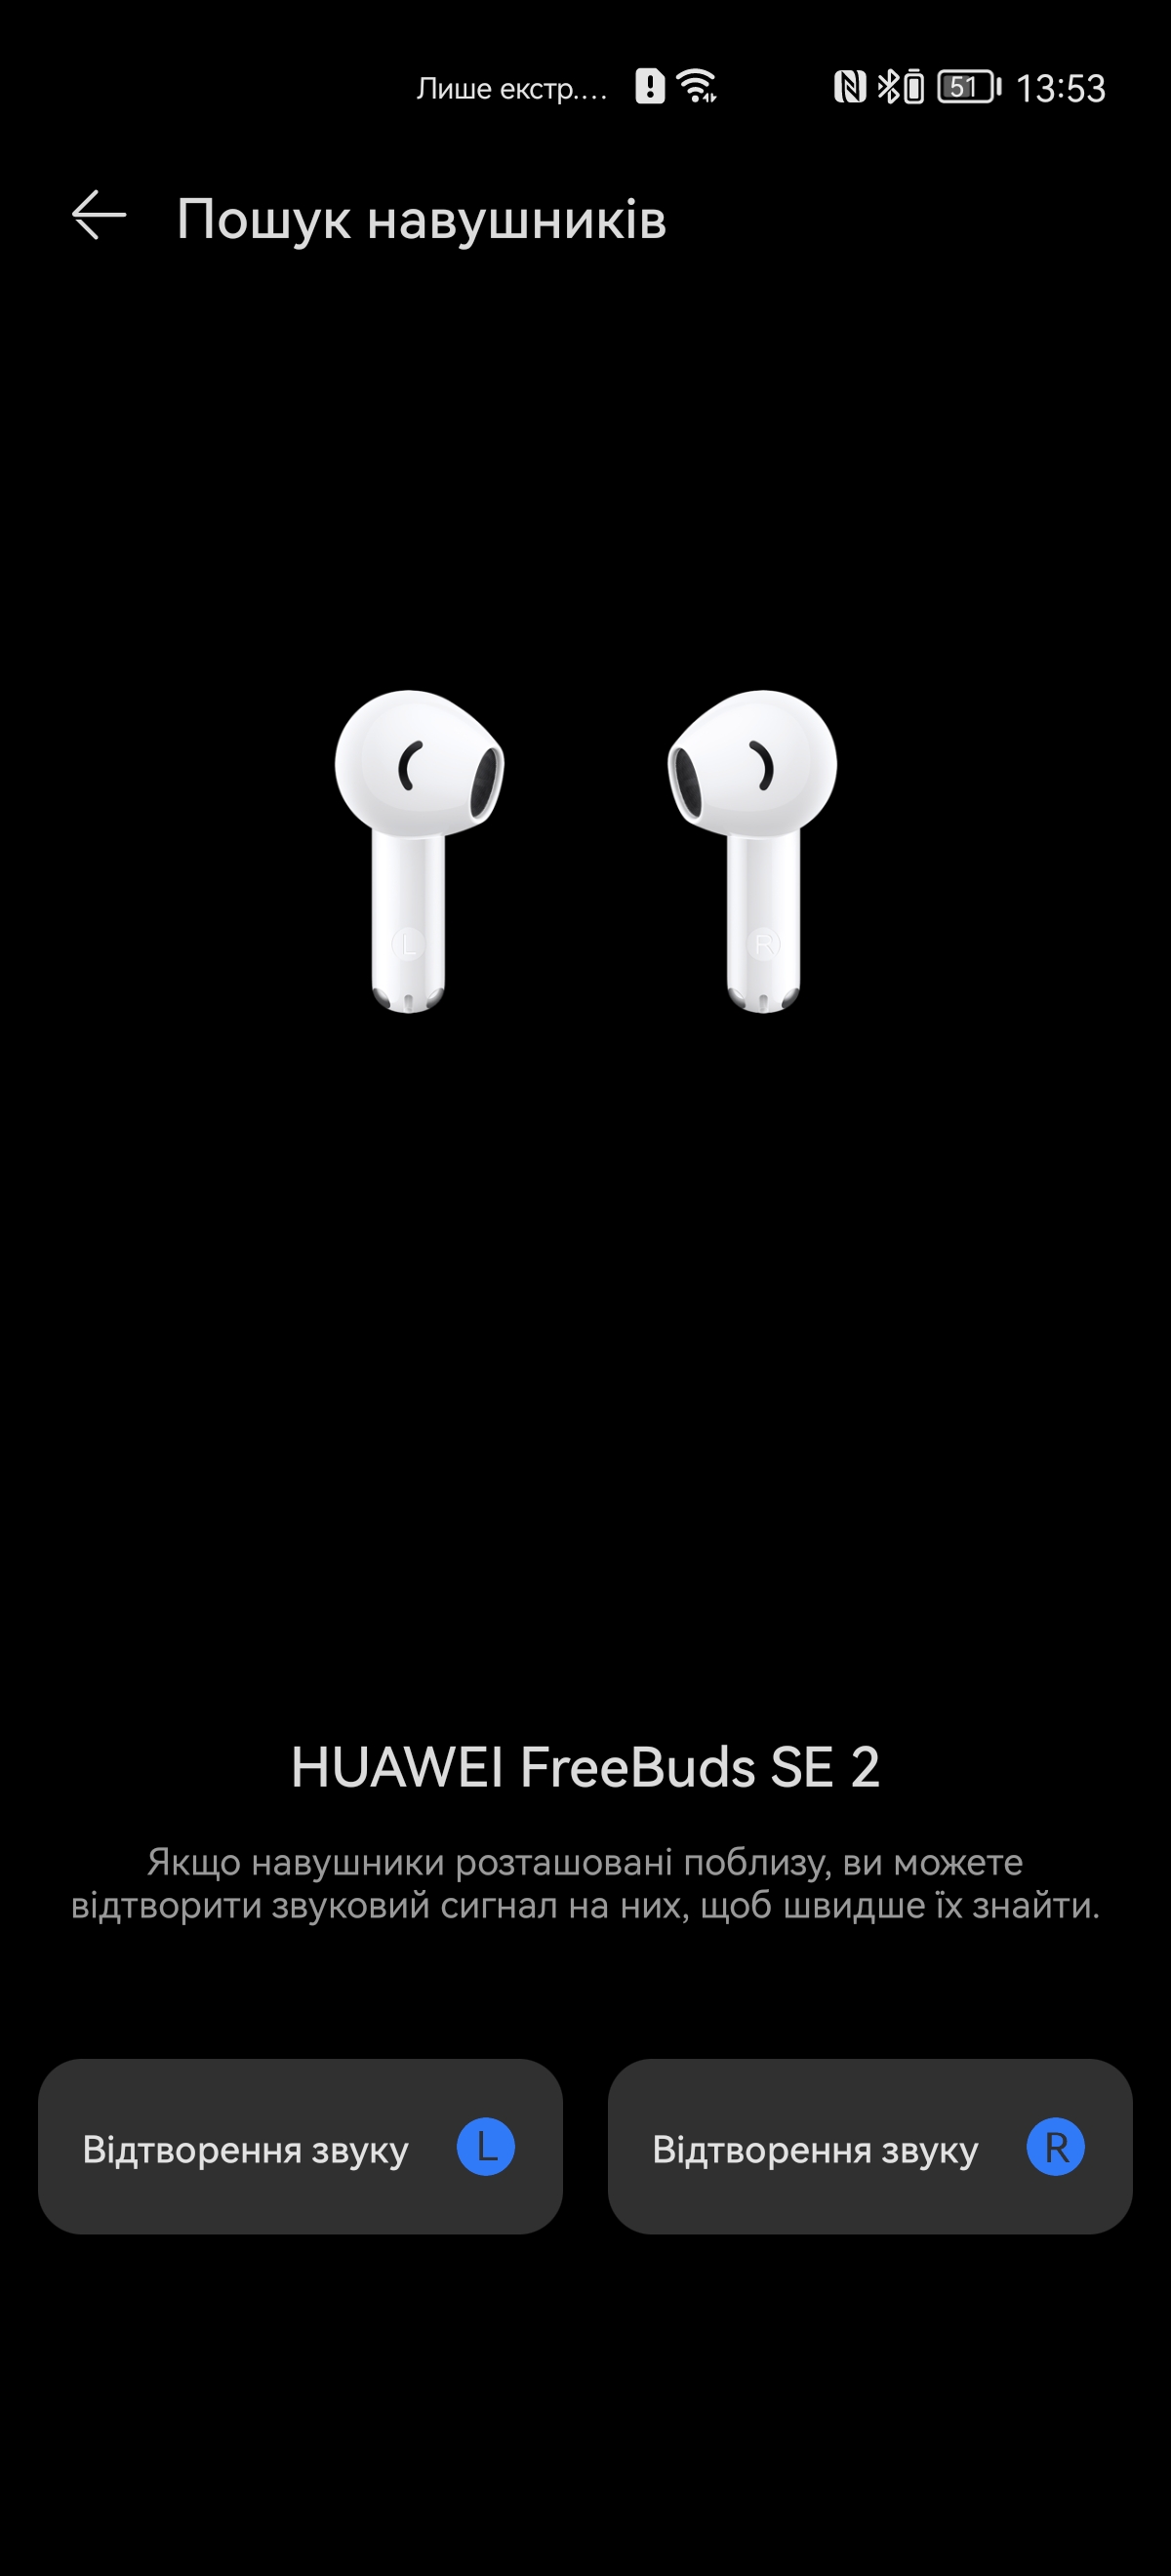 Huawei 2 TWS 6 SE FreeBuds in Stunden Kopfhörer Musik Test: Gramm Garantiert 4